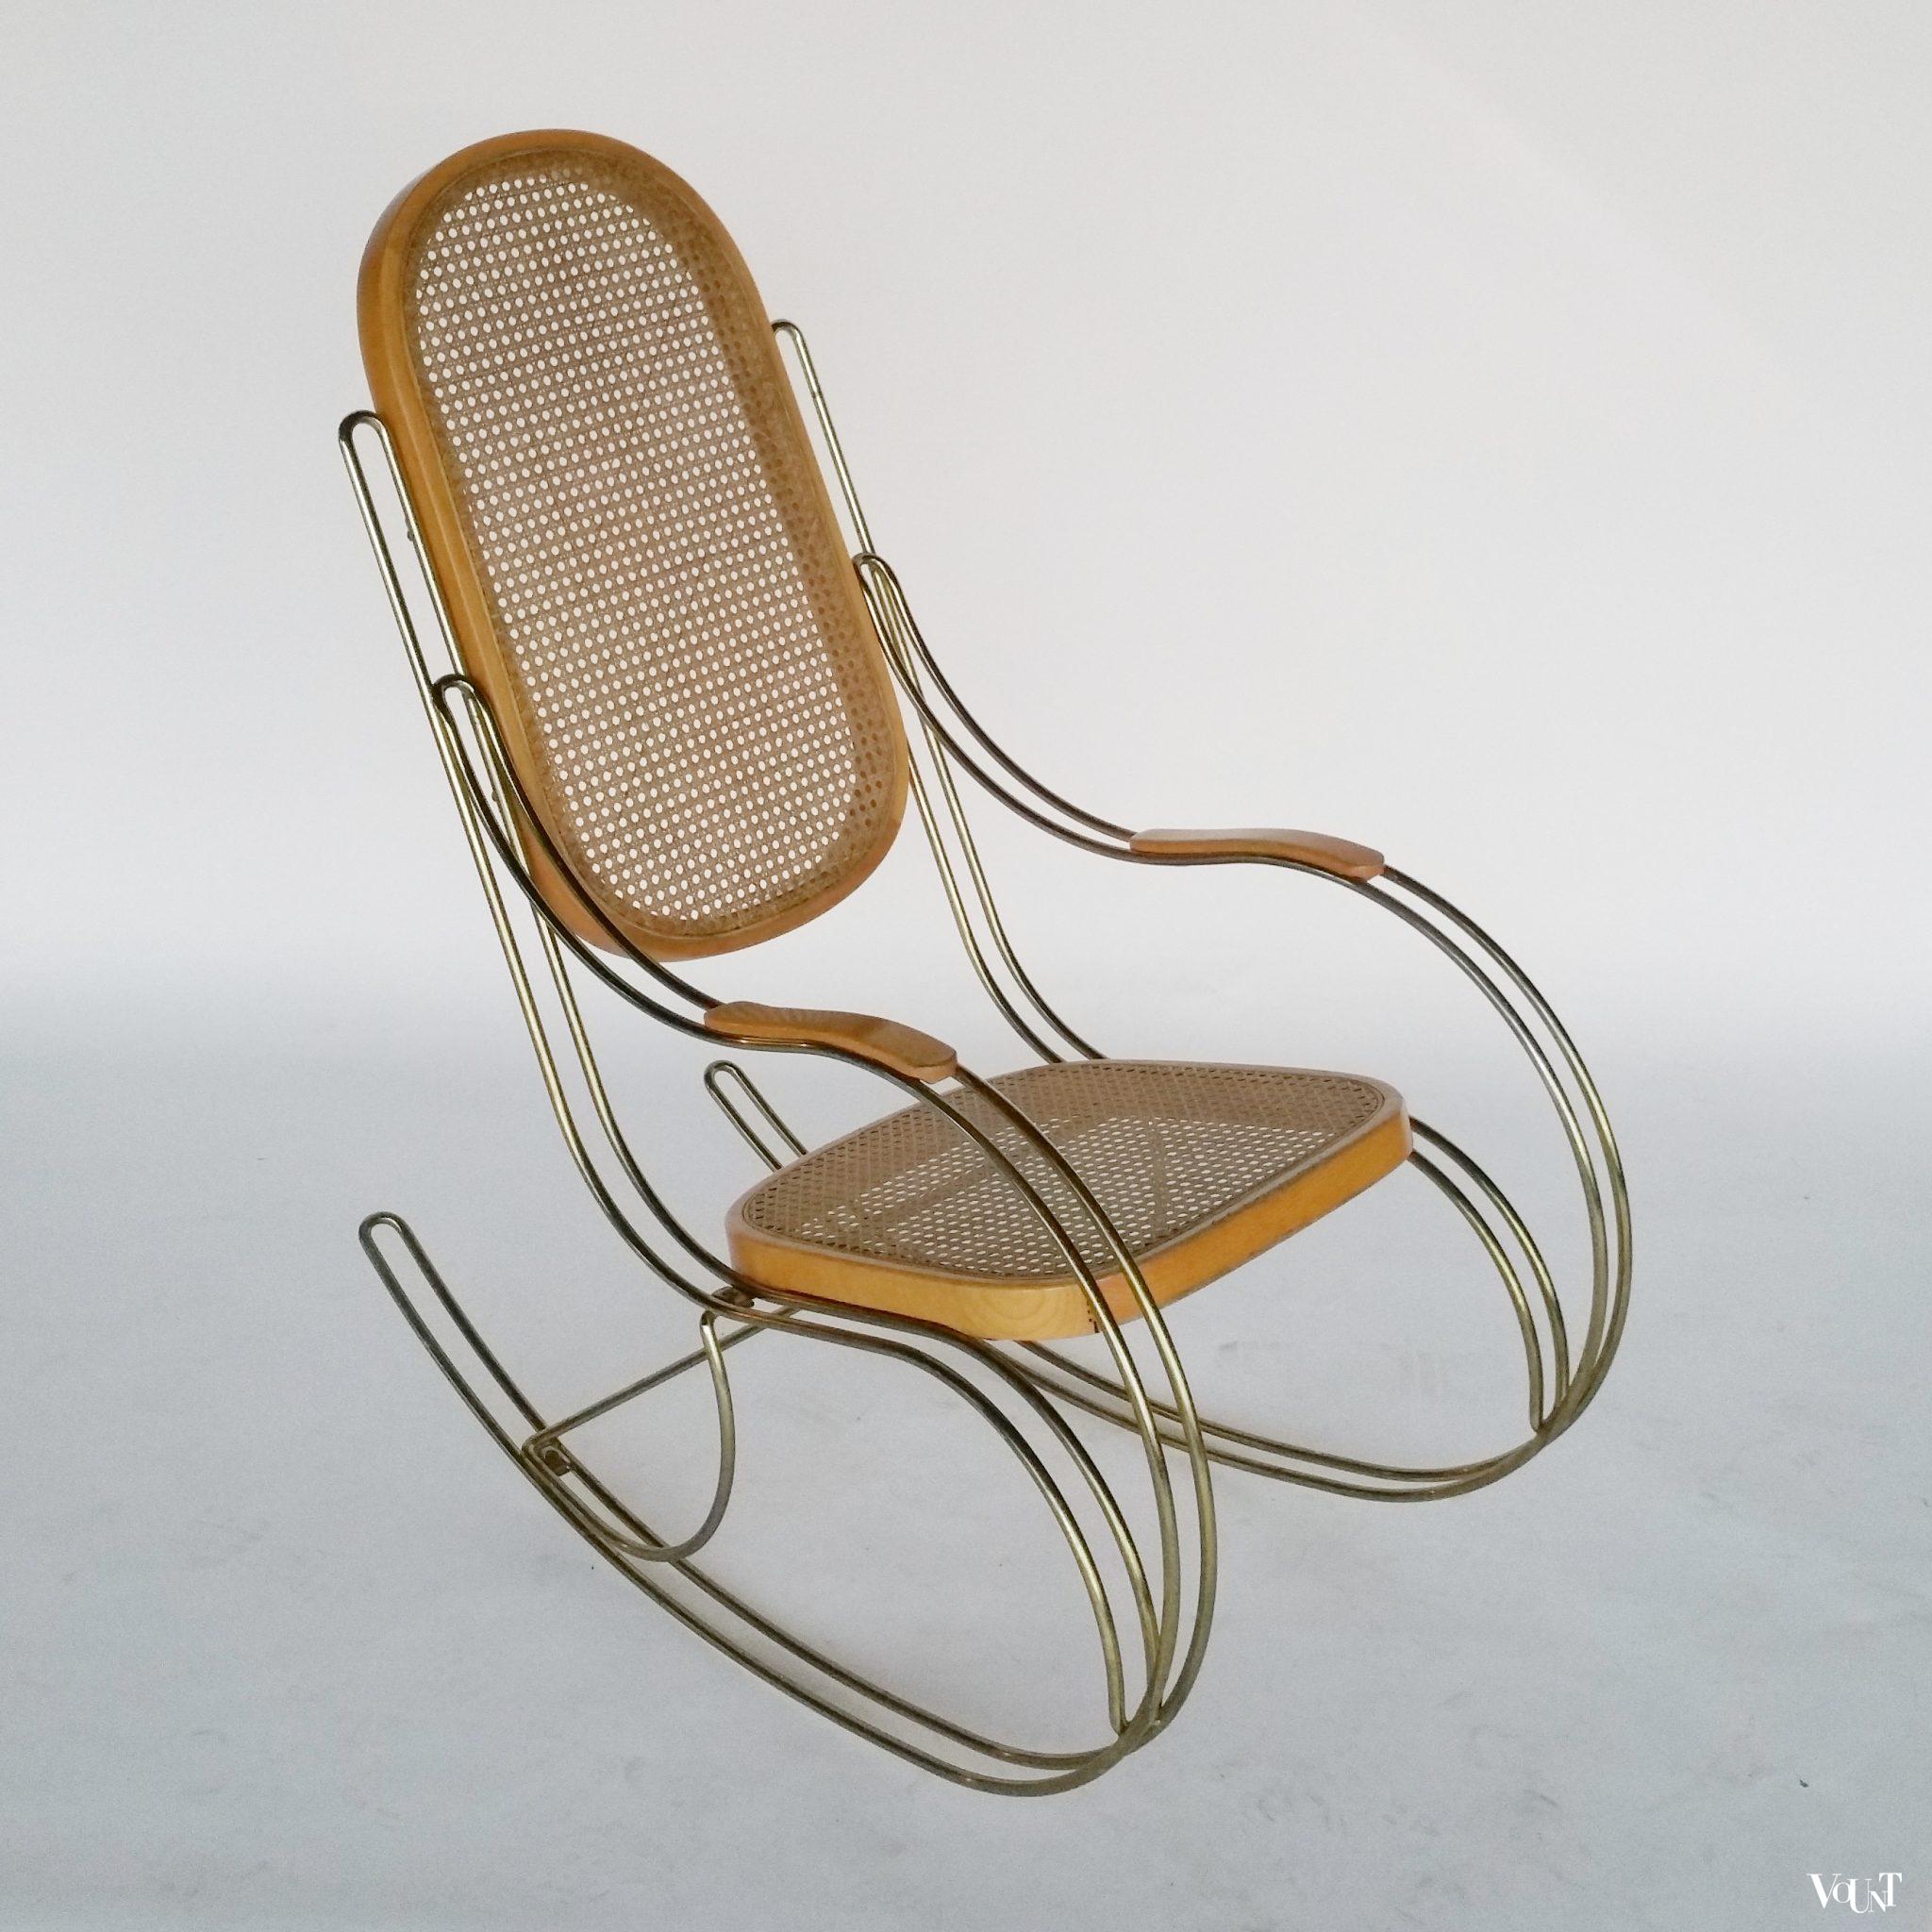 voorwoord bedriegen petticoat Jaren '70 Thonet-stijl schommelstoel met metalen frame